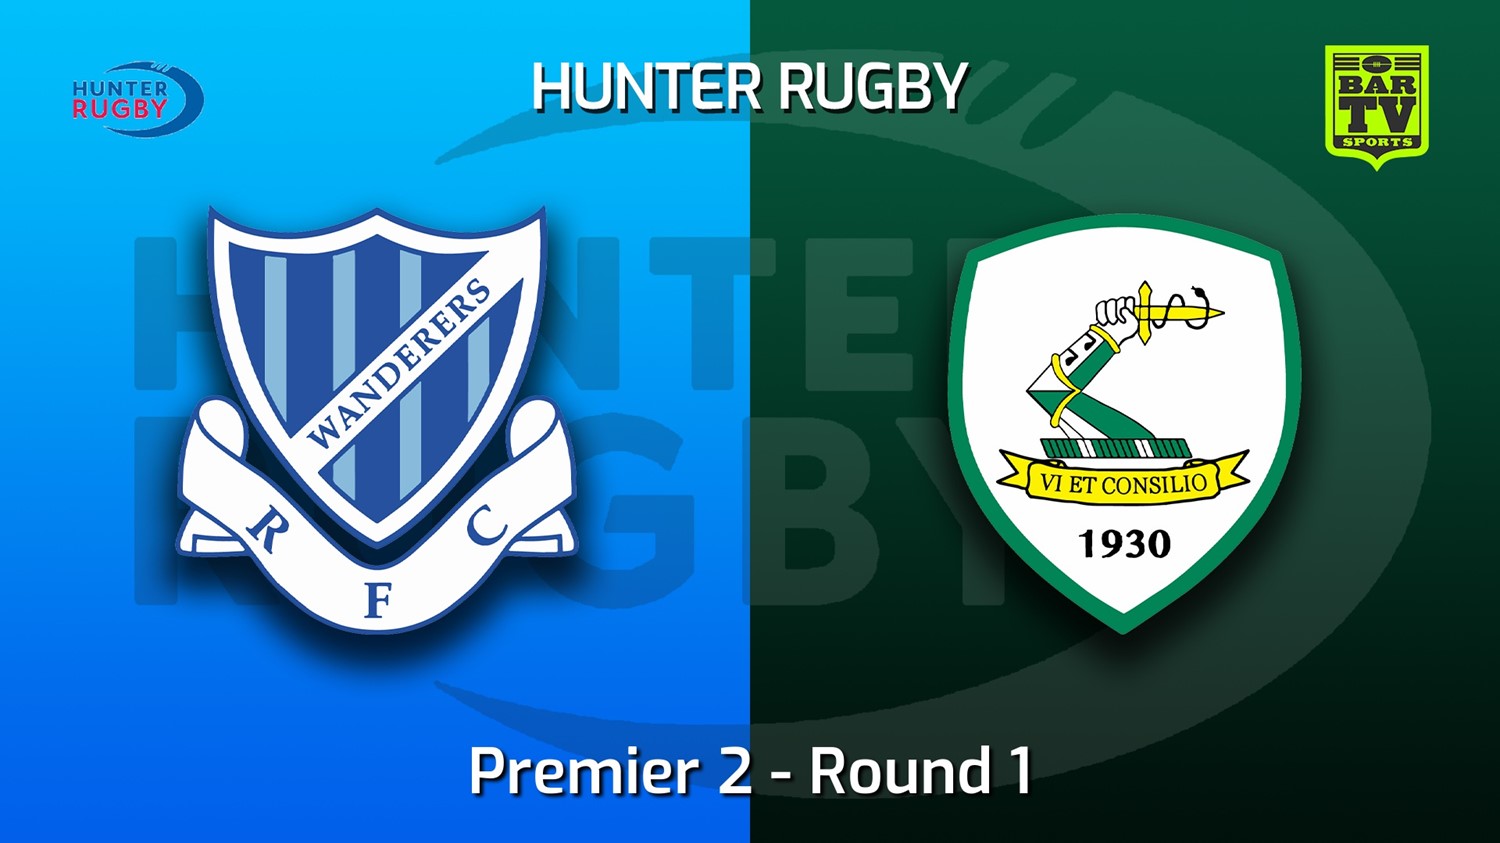 220425-Hunter Rugby Round 1 - Premier 2 - Wanderers v Merewether Carlton Slate Image